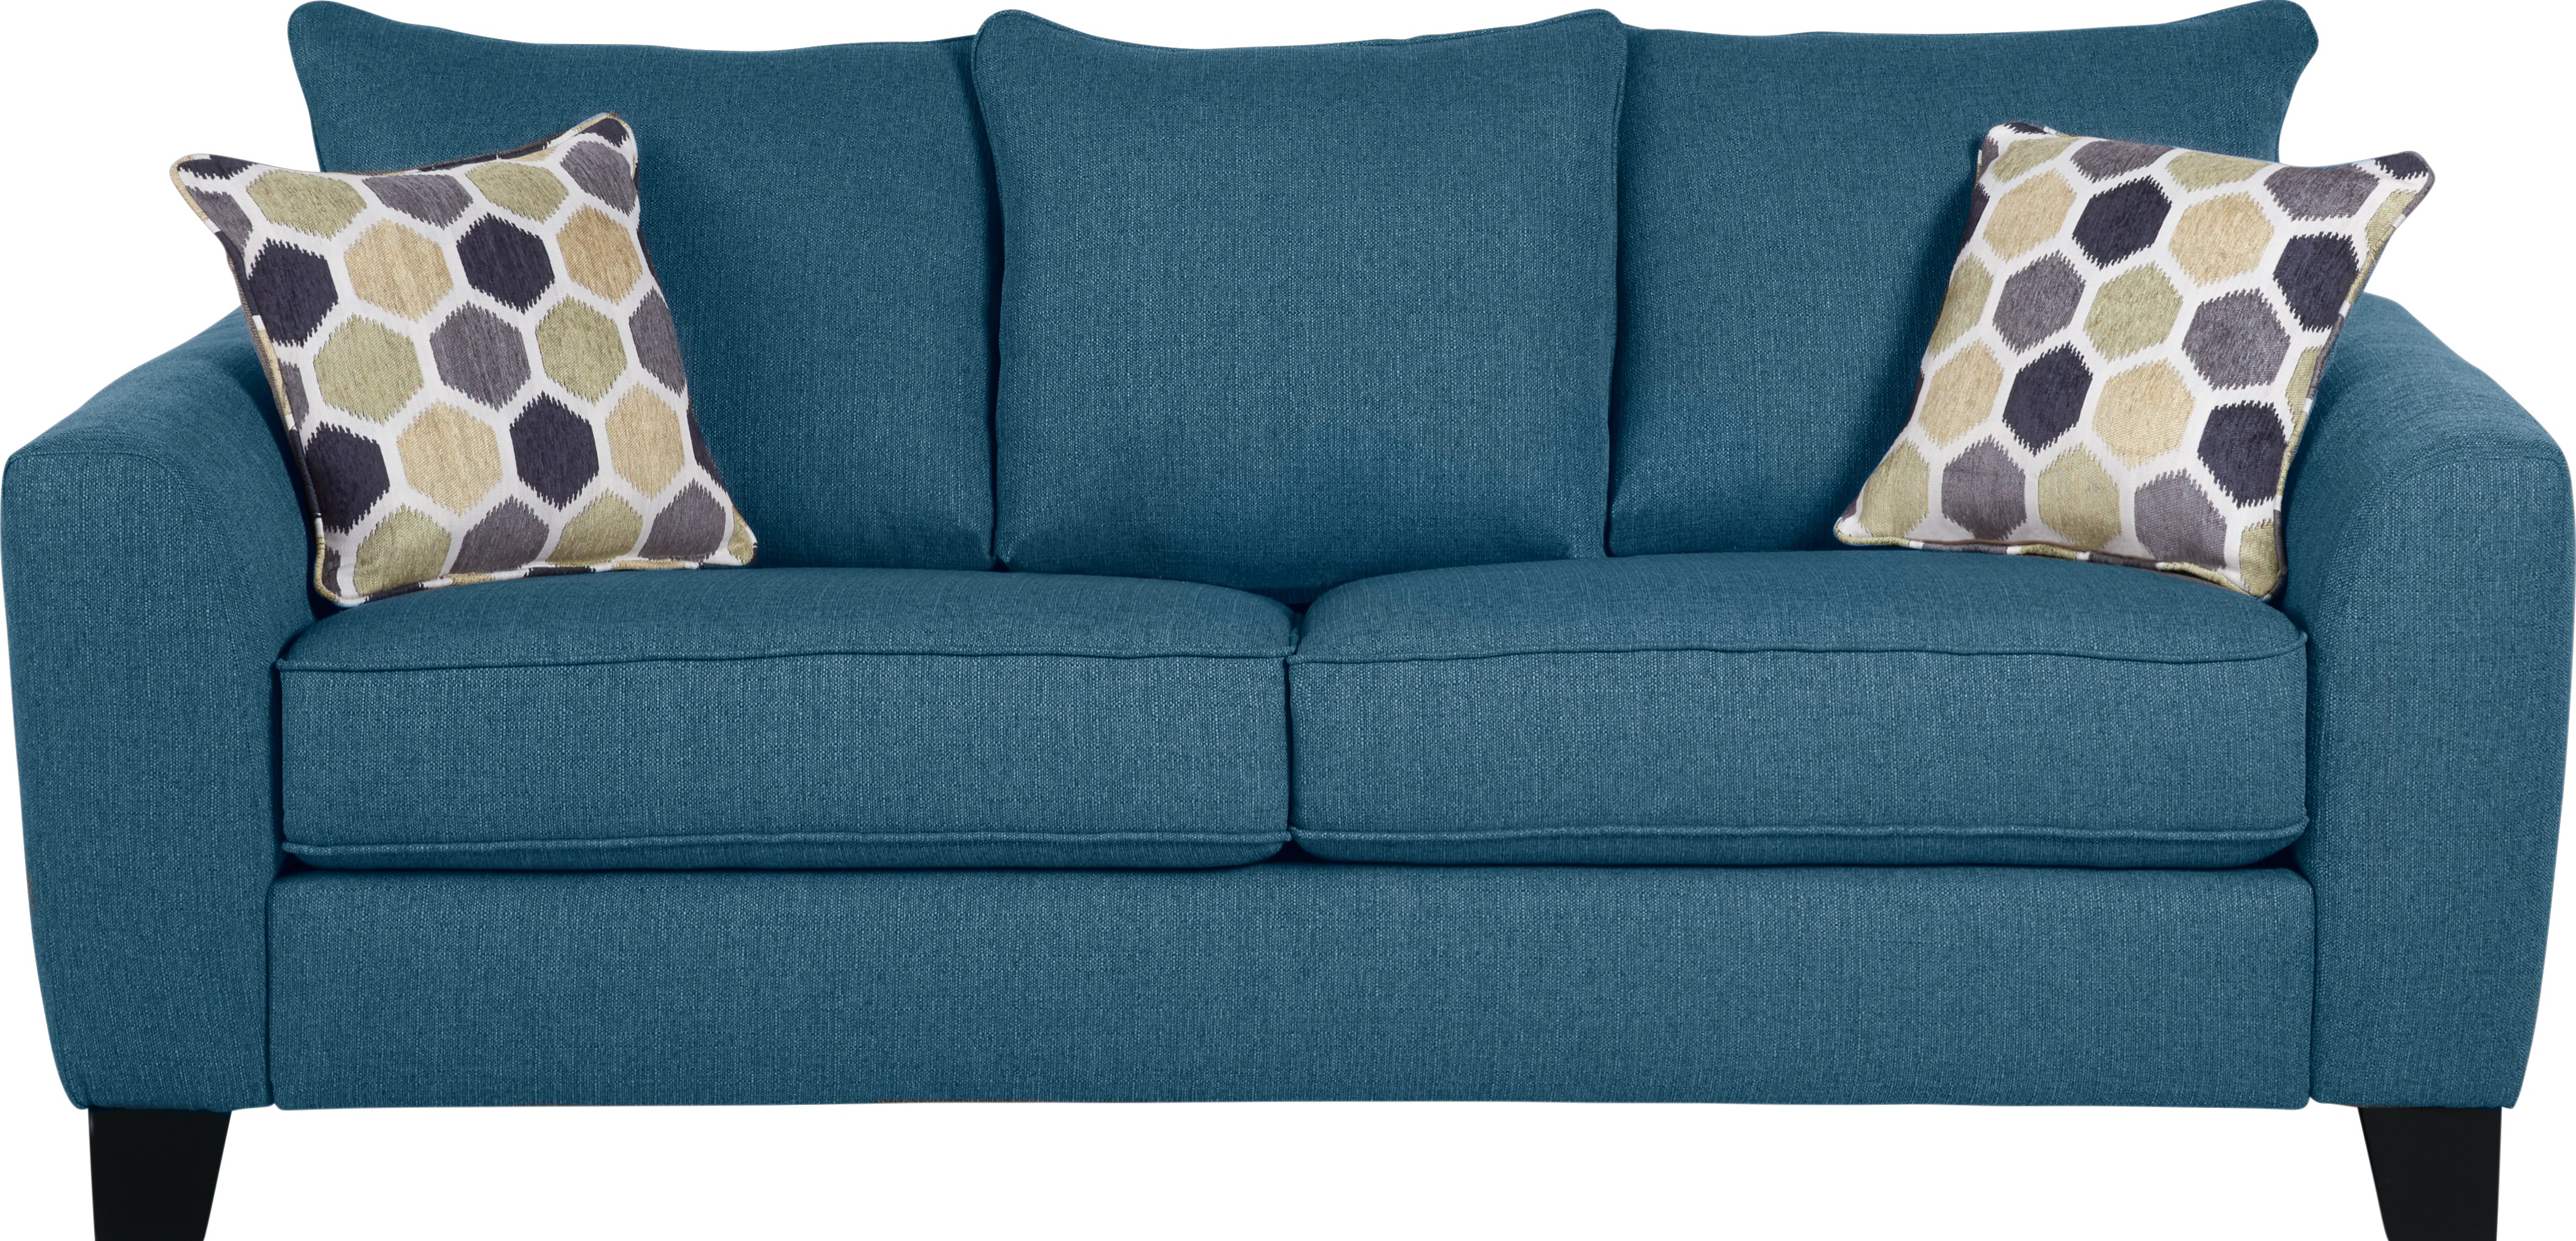 royal blue sofa bed